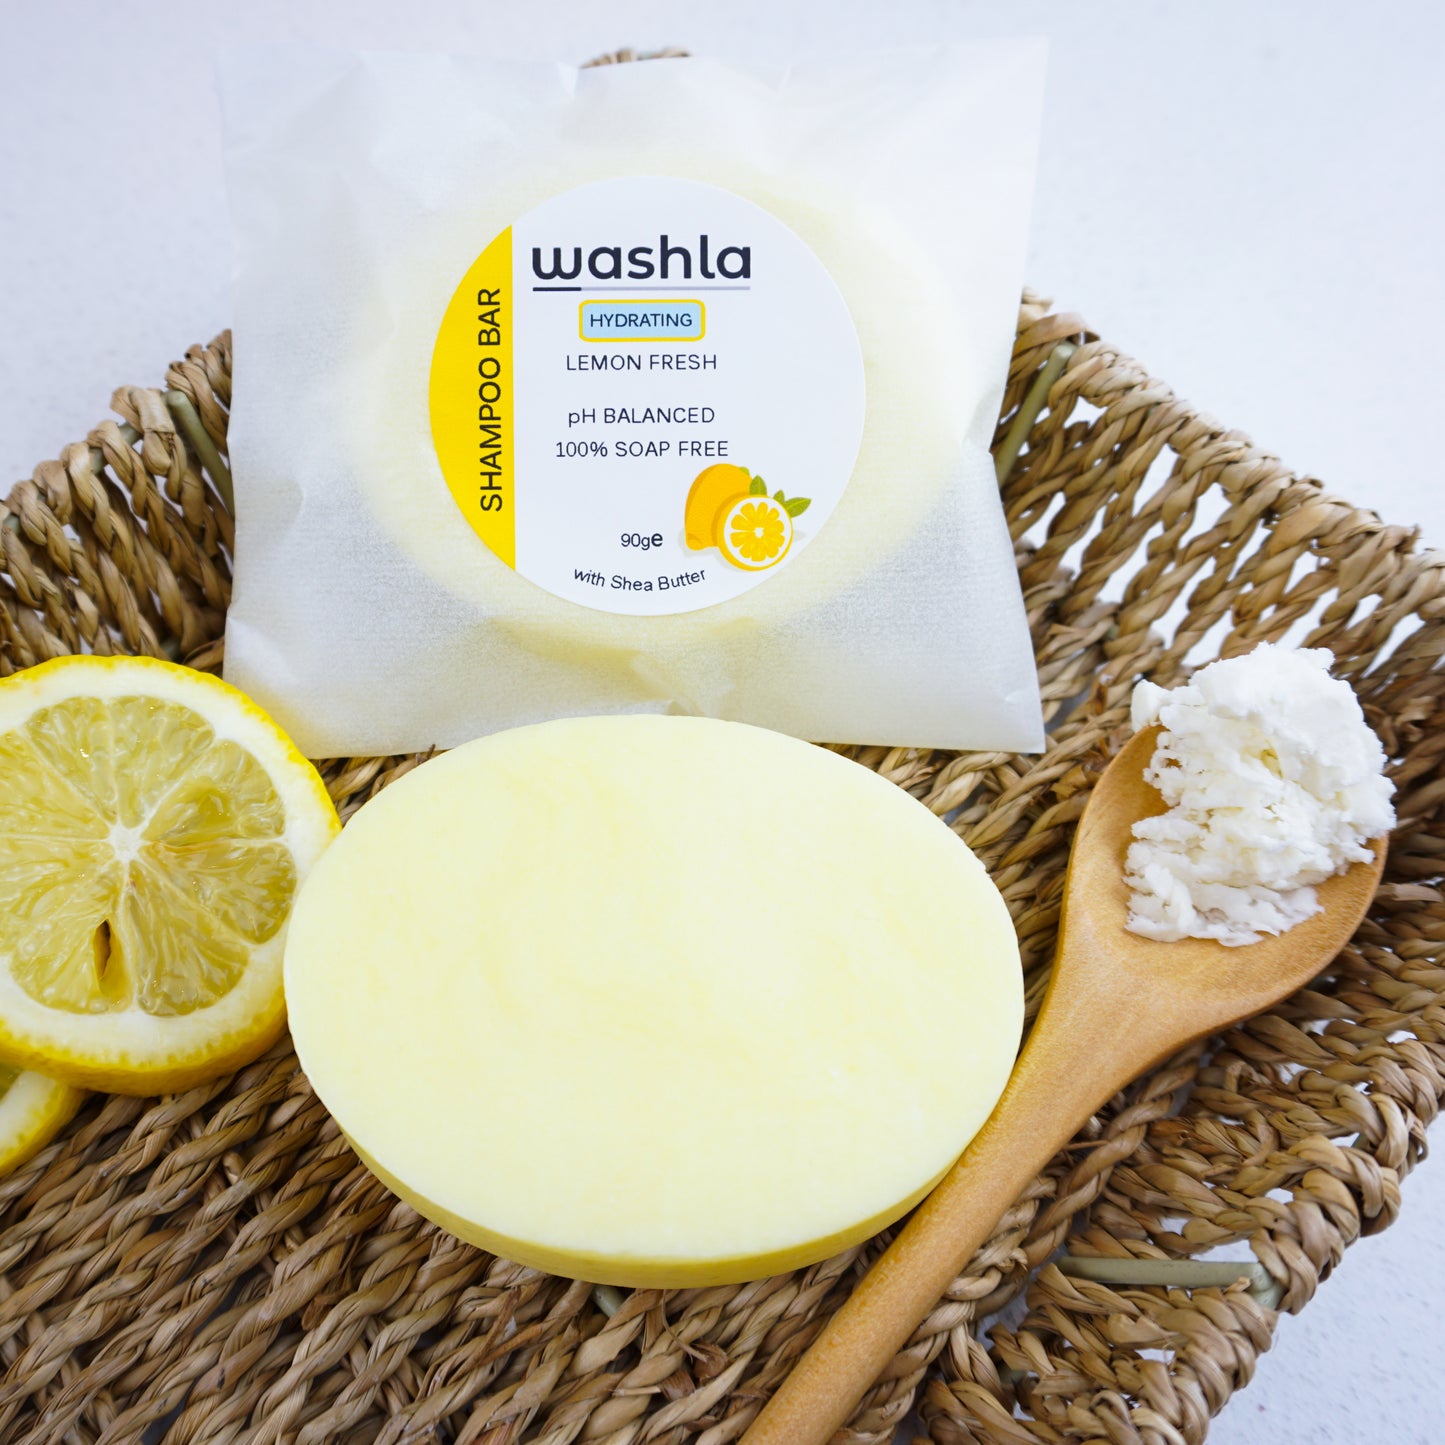 Washla Lemon Hydrating shampoo bar packaged in glassine envelope sitting on a hamper basket.